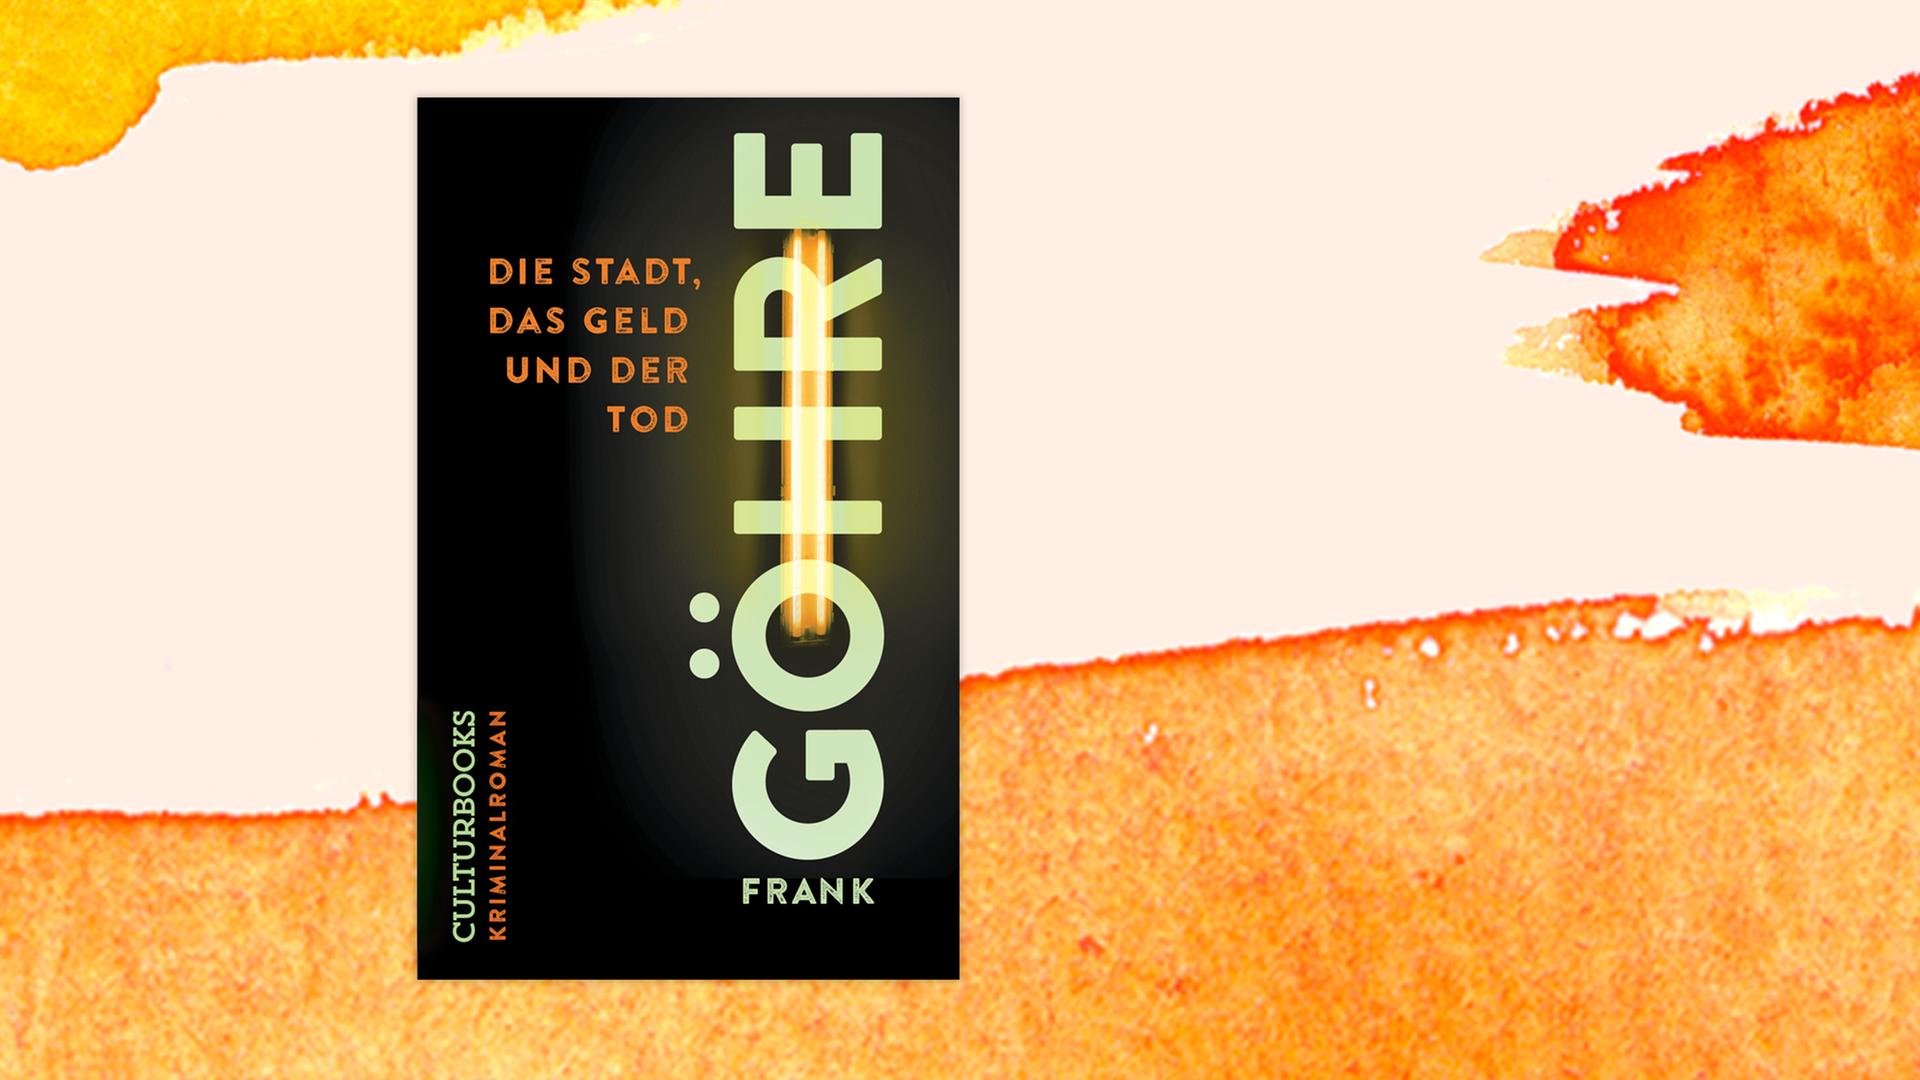 Das Cover des Krimis "Die Stadt, das Geld und der Tod" von Frank Göhre auf orange-weißem Grund.